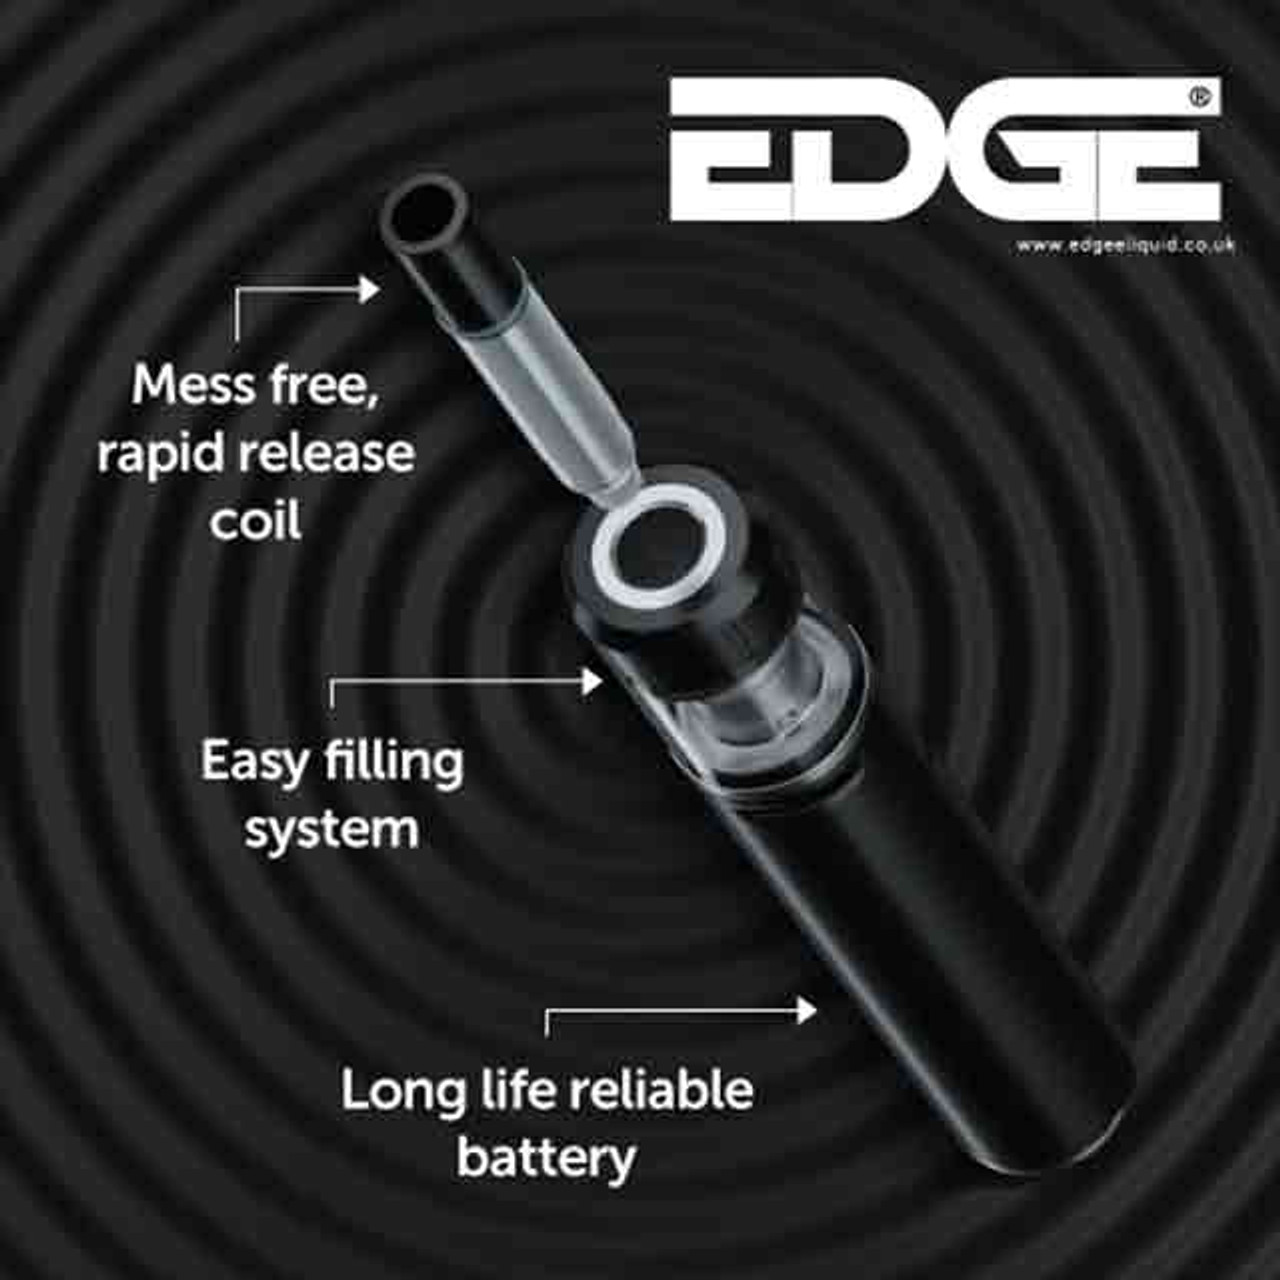 EDGE Pro Vape Pen components